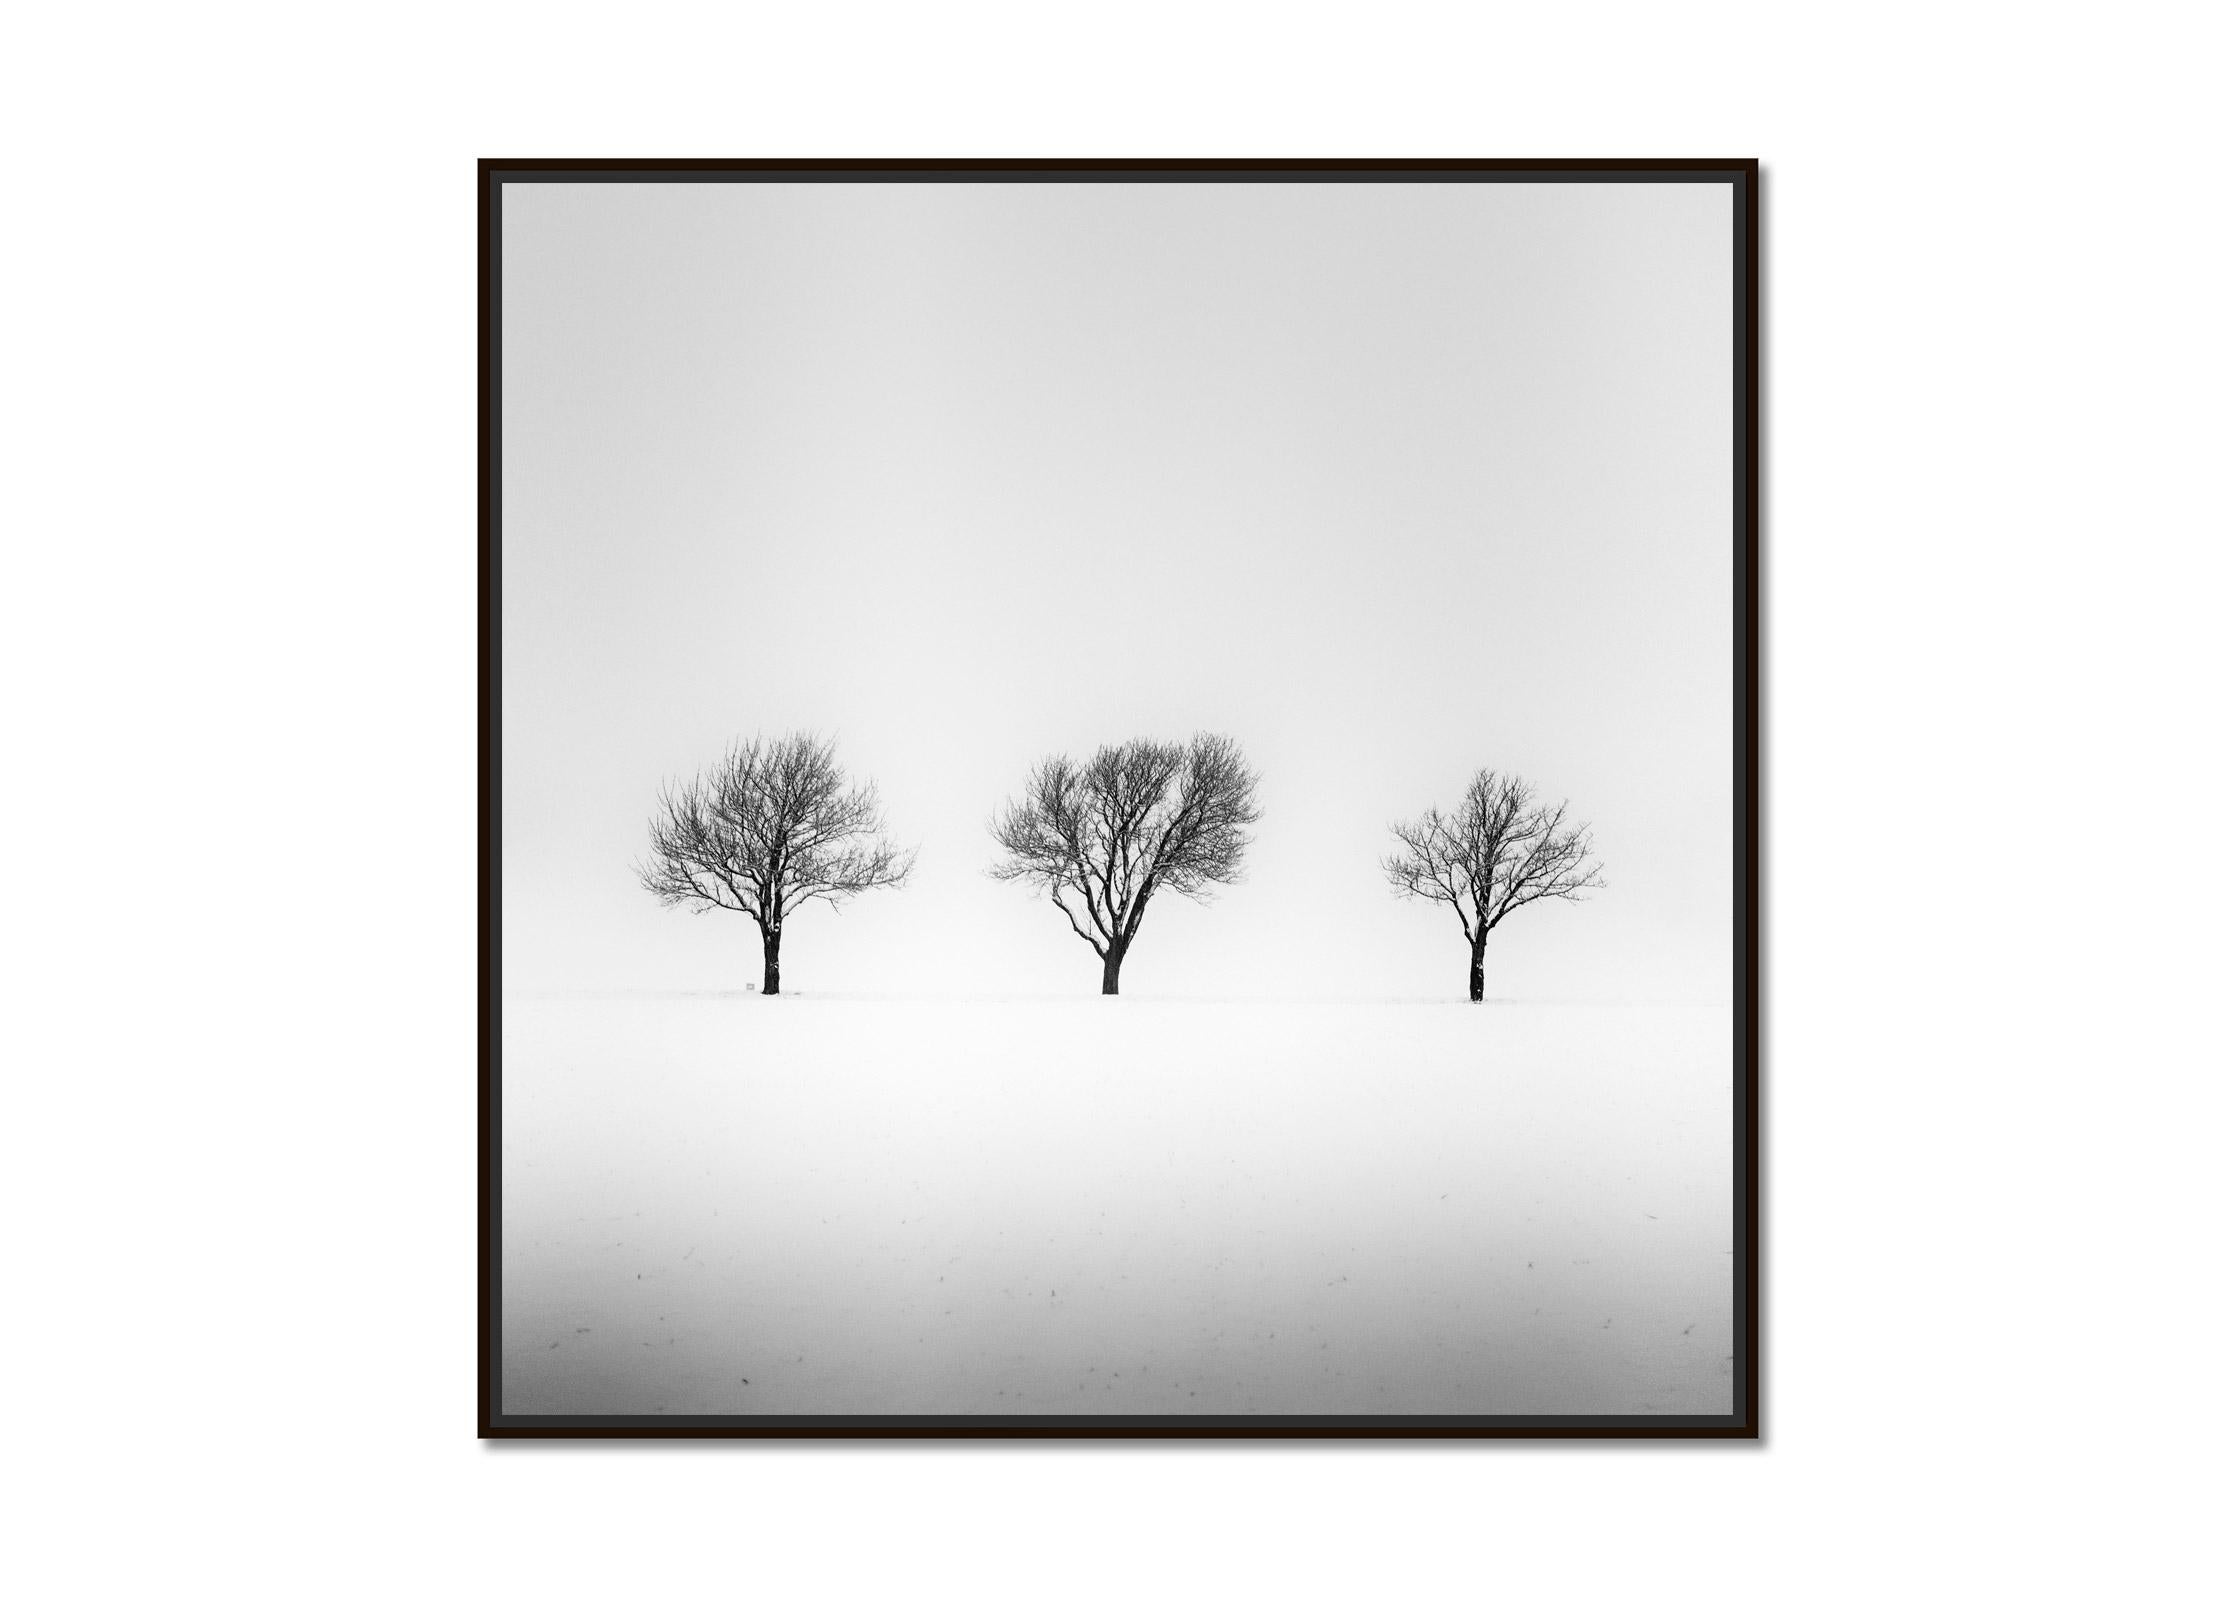 Arbres dans un champ enneigé, hiver, neige, photographie en noir et blanc, paysage - Photograph de Gerald Berghammer